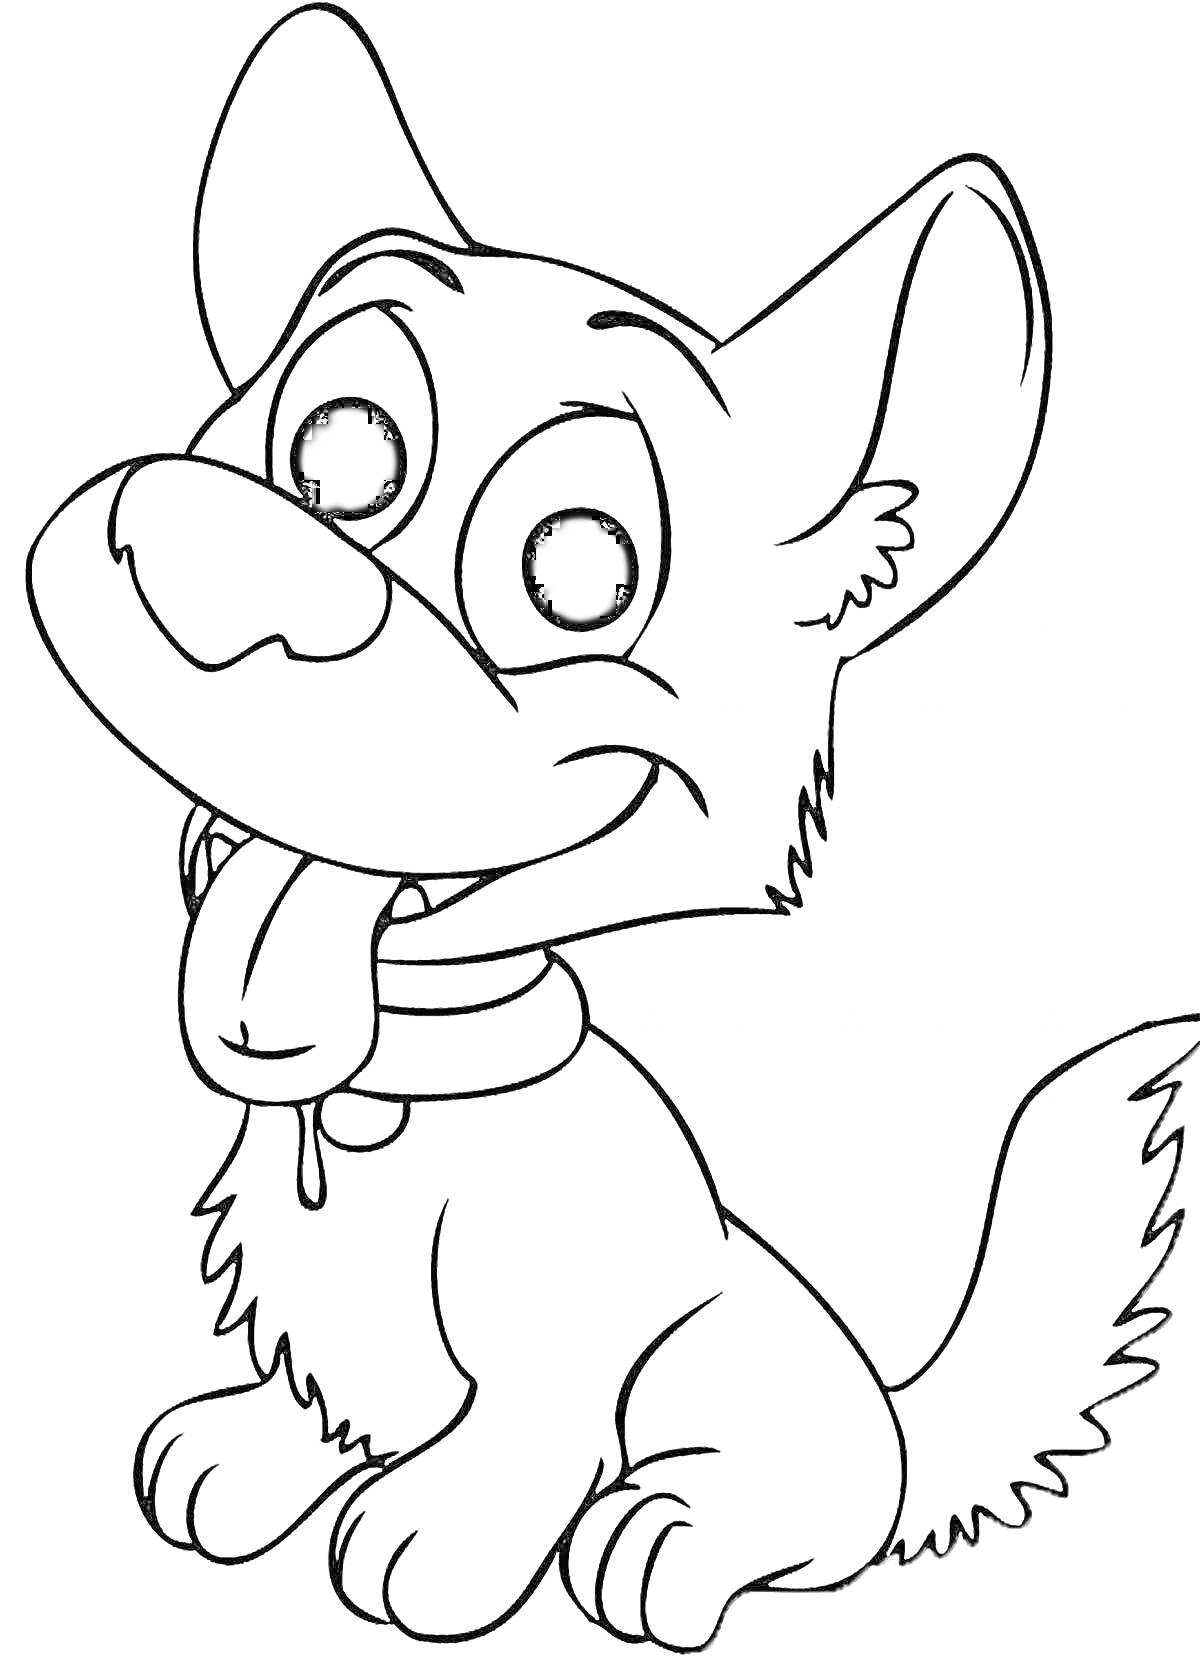 Раскраска Раскраска с мультяшной собачкой со стоячими ушами и высунутым языком